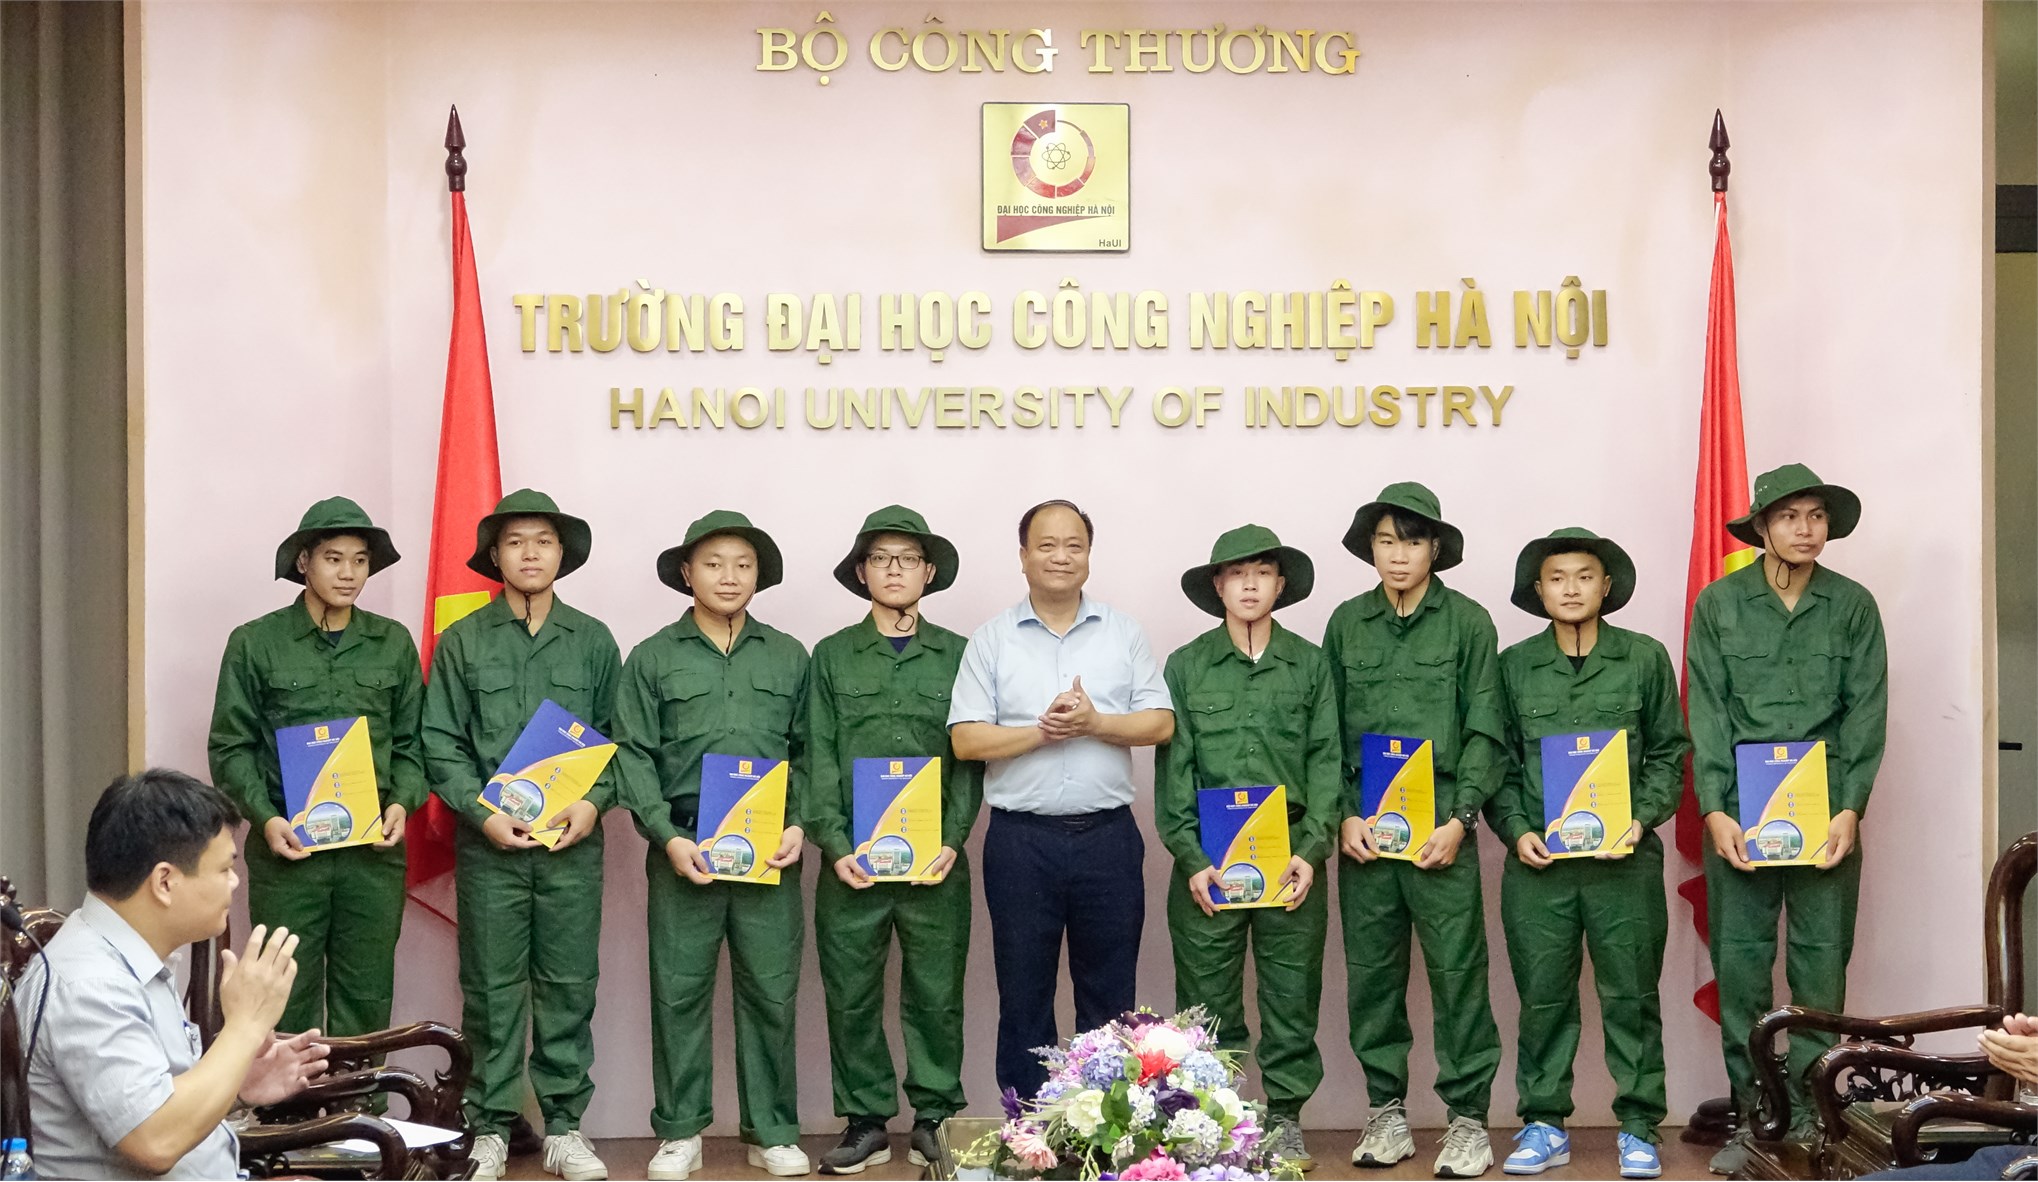 Tân kỹ sư Khoa Cơ khí - Đại học Công Nghiệp Hà Nội tự hào góp sức vào sự nghiệp xây dựng và bảo vệ Tổ quốc